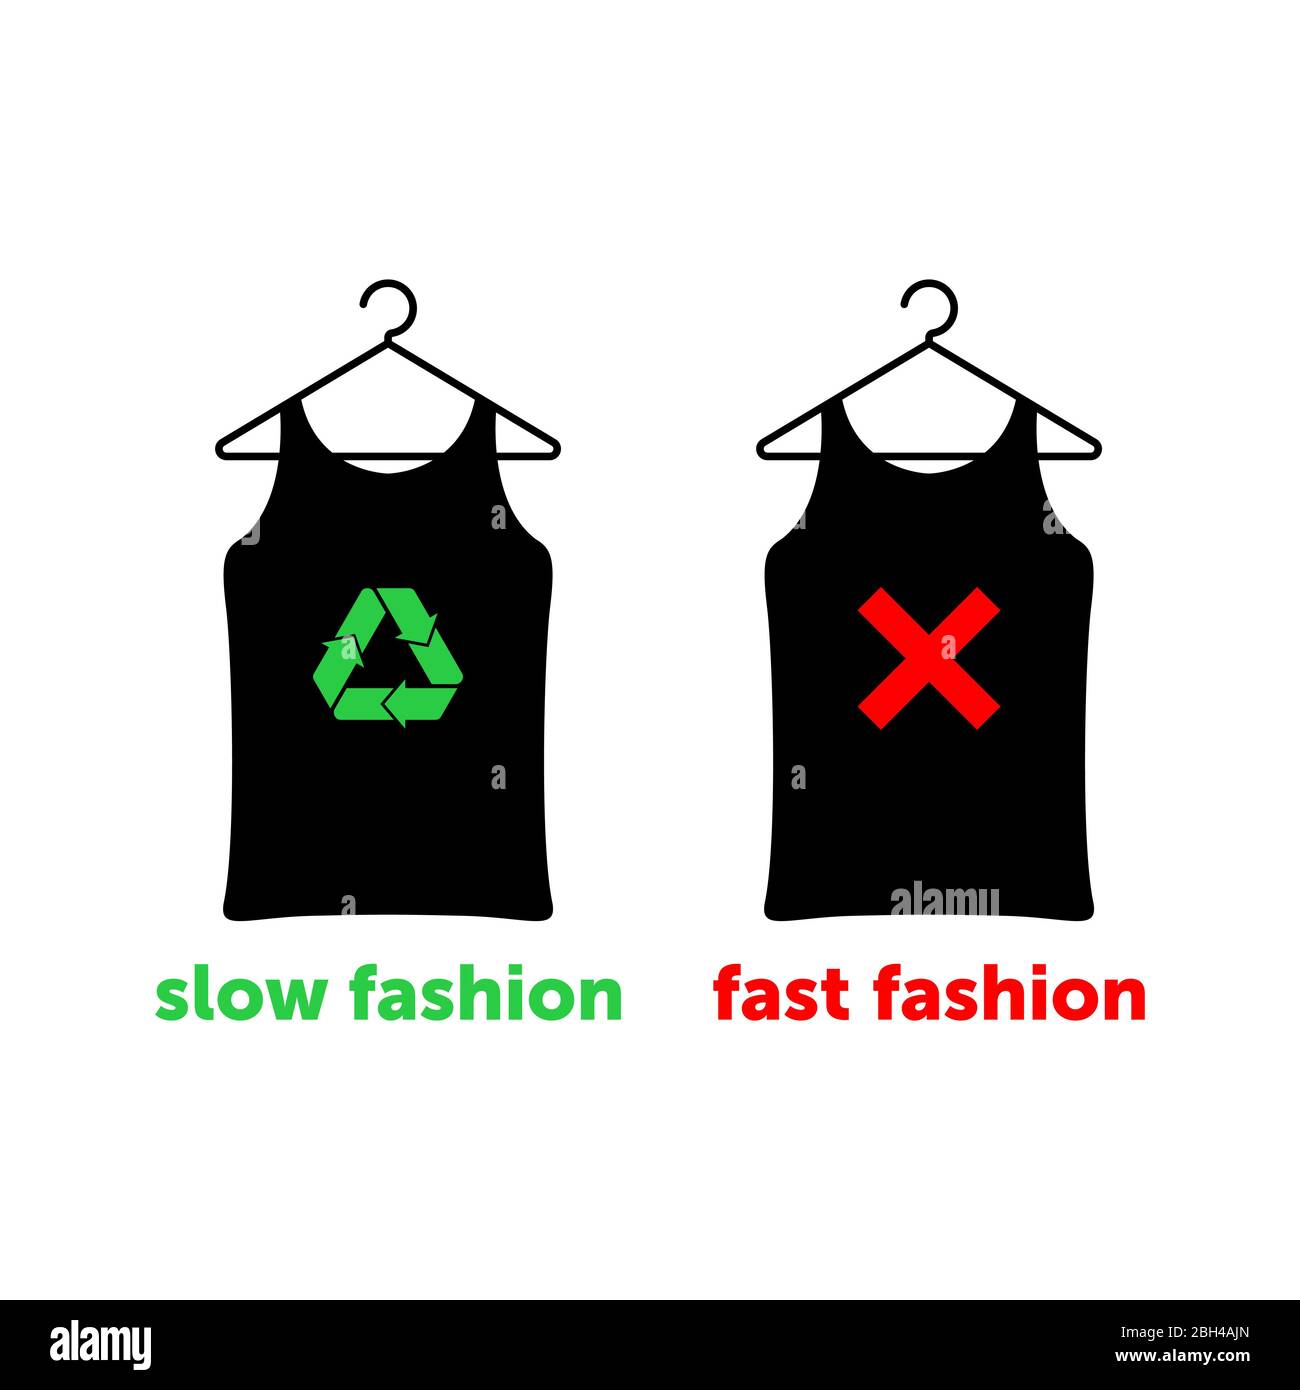 Slow Fashion ist die richtige Wahl, um die Erde zu retten. Zwei T-Shirts auf Kleiderbügeln mit rotem Kreuz und grünem Recycling-Schild. Vektorgrafik. Stock Vektor